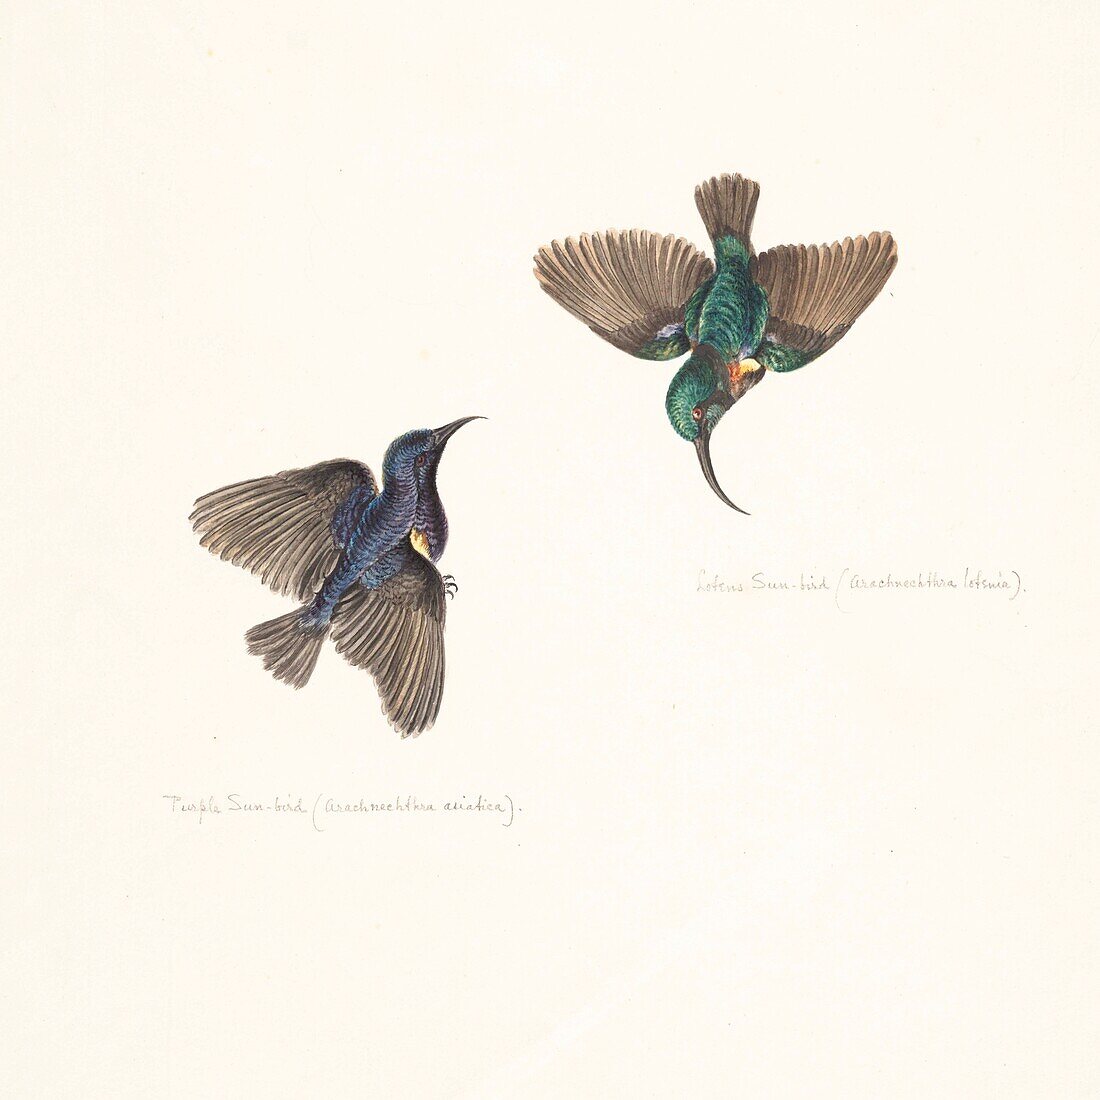 Purple and Loten's sunbirds, 18th century illustration